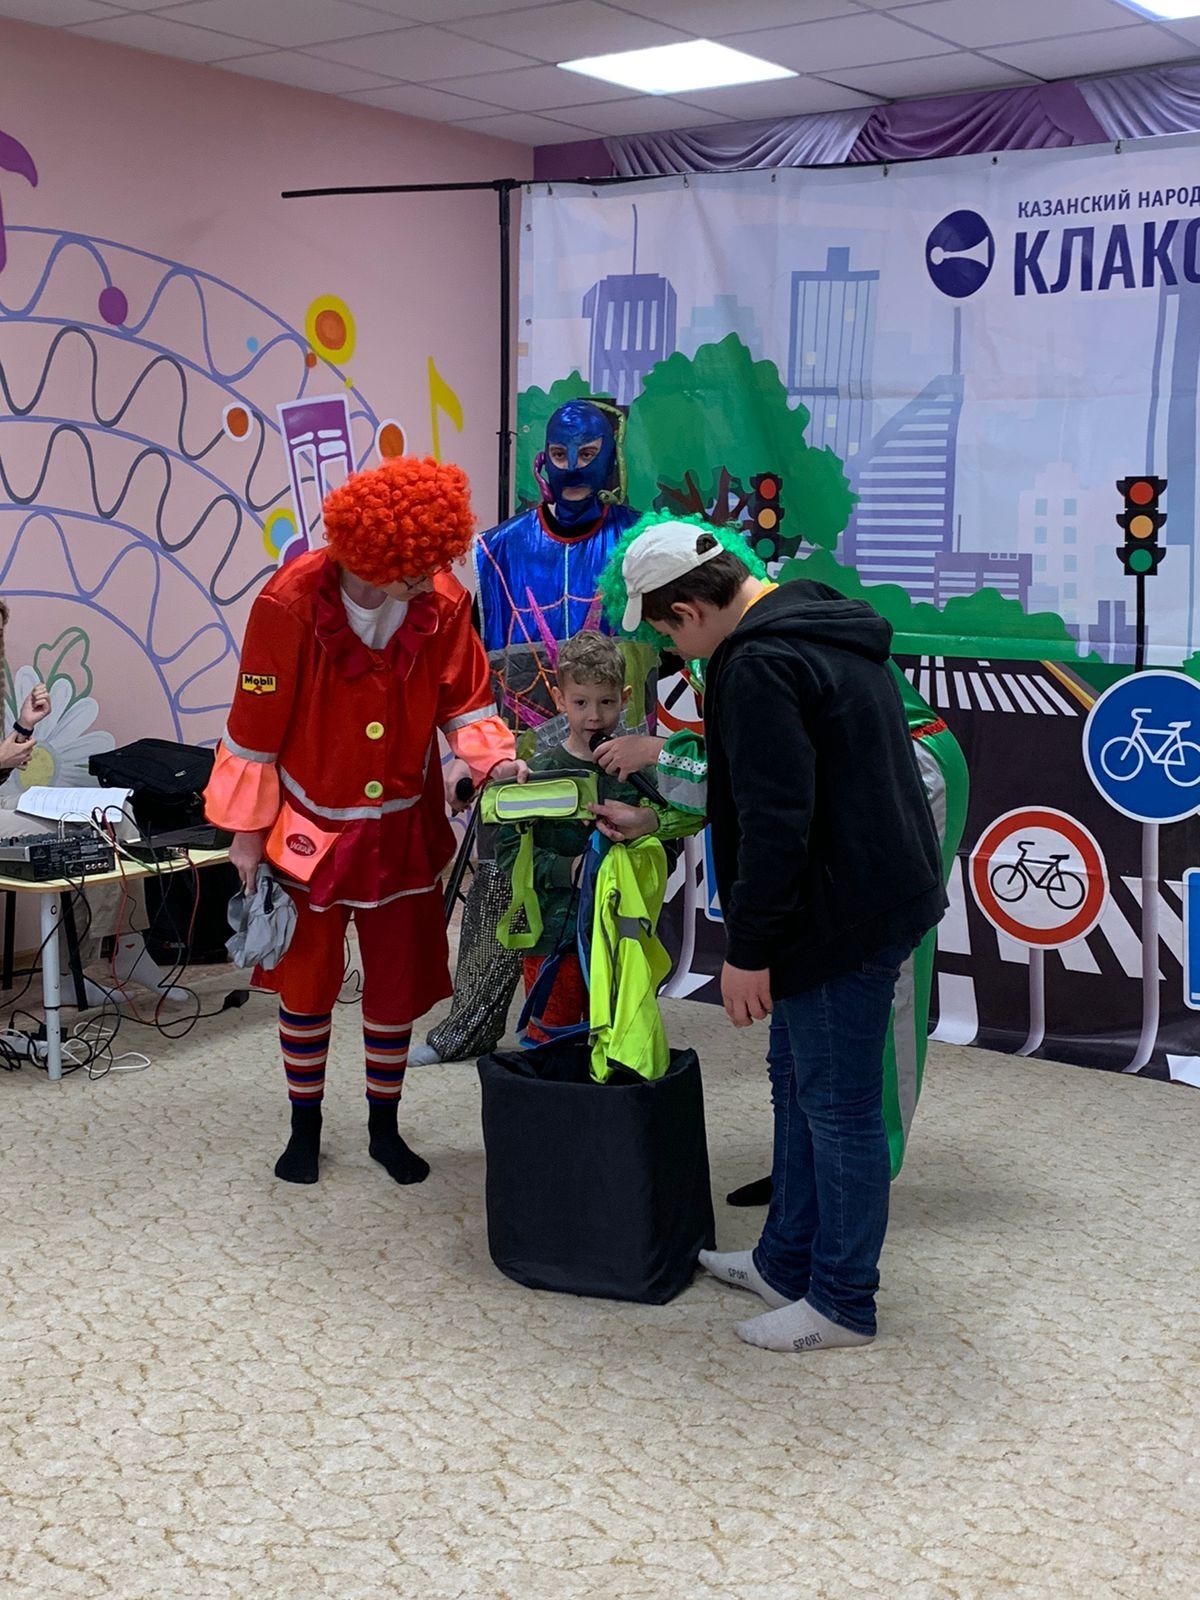 Казанский народный театр «Клаксон» показал сокуровским детям спектакль по ПДД